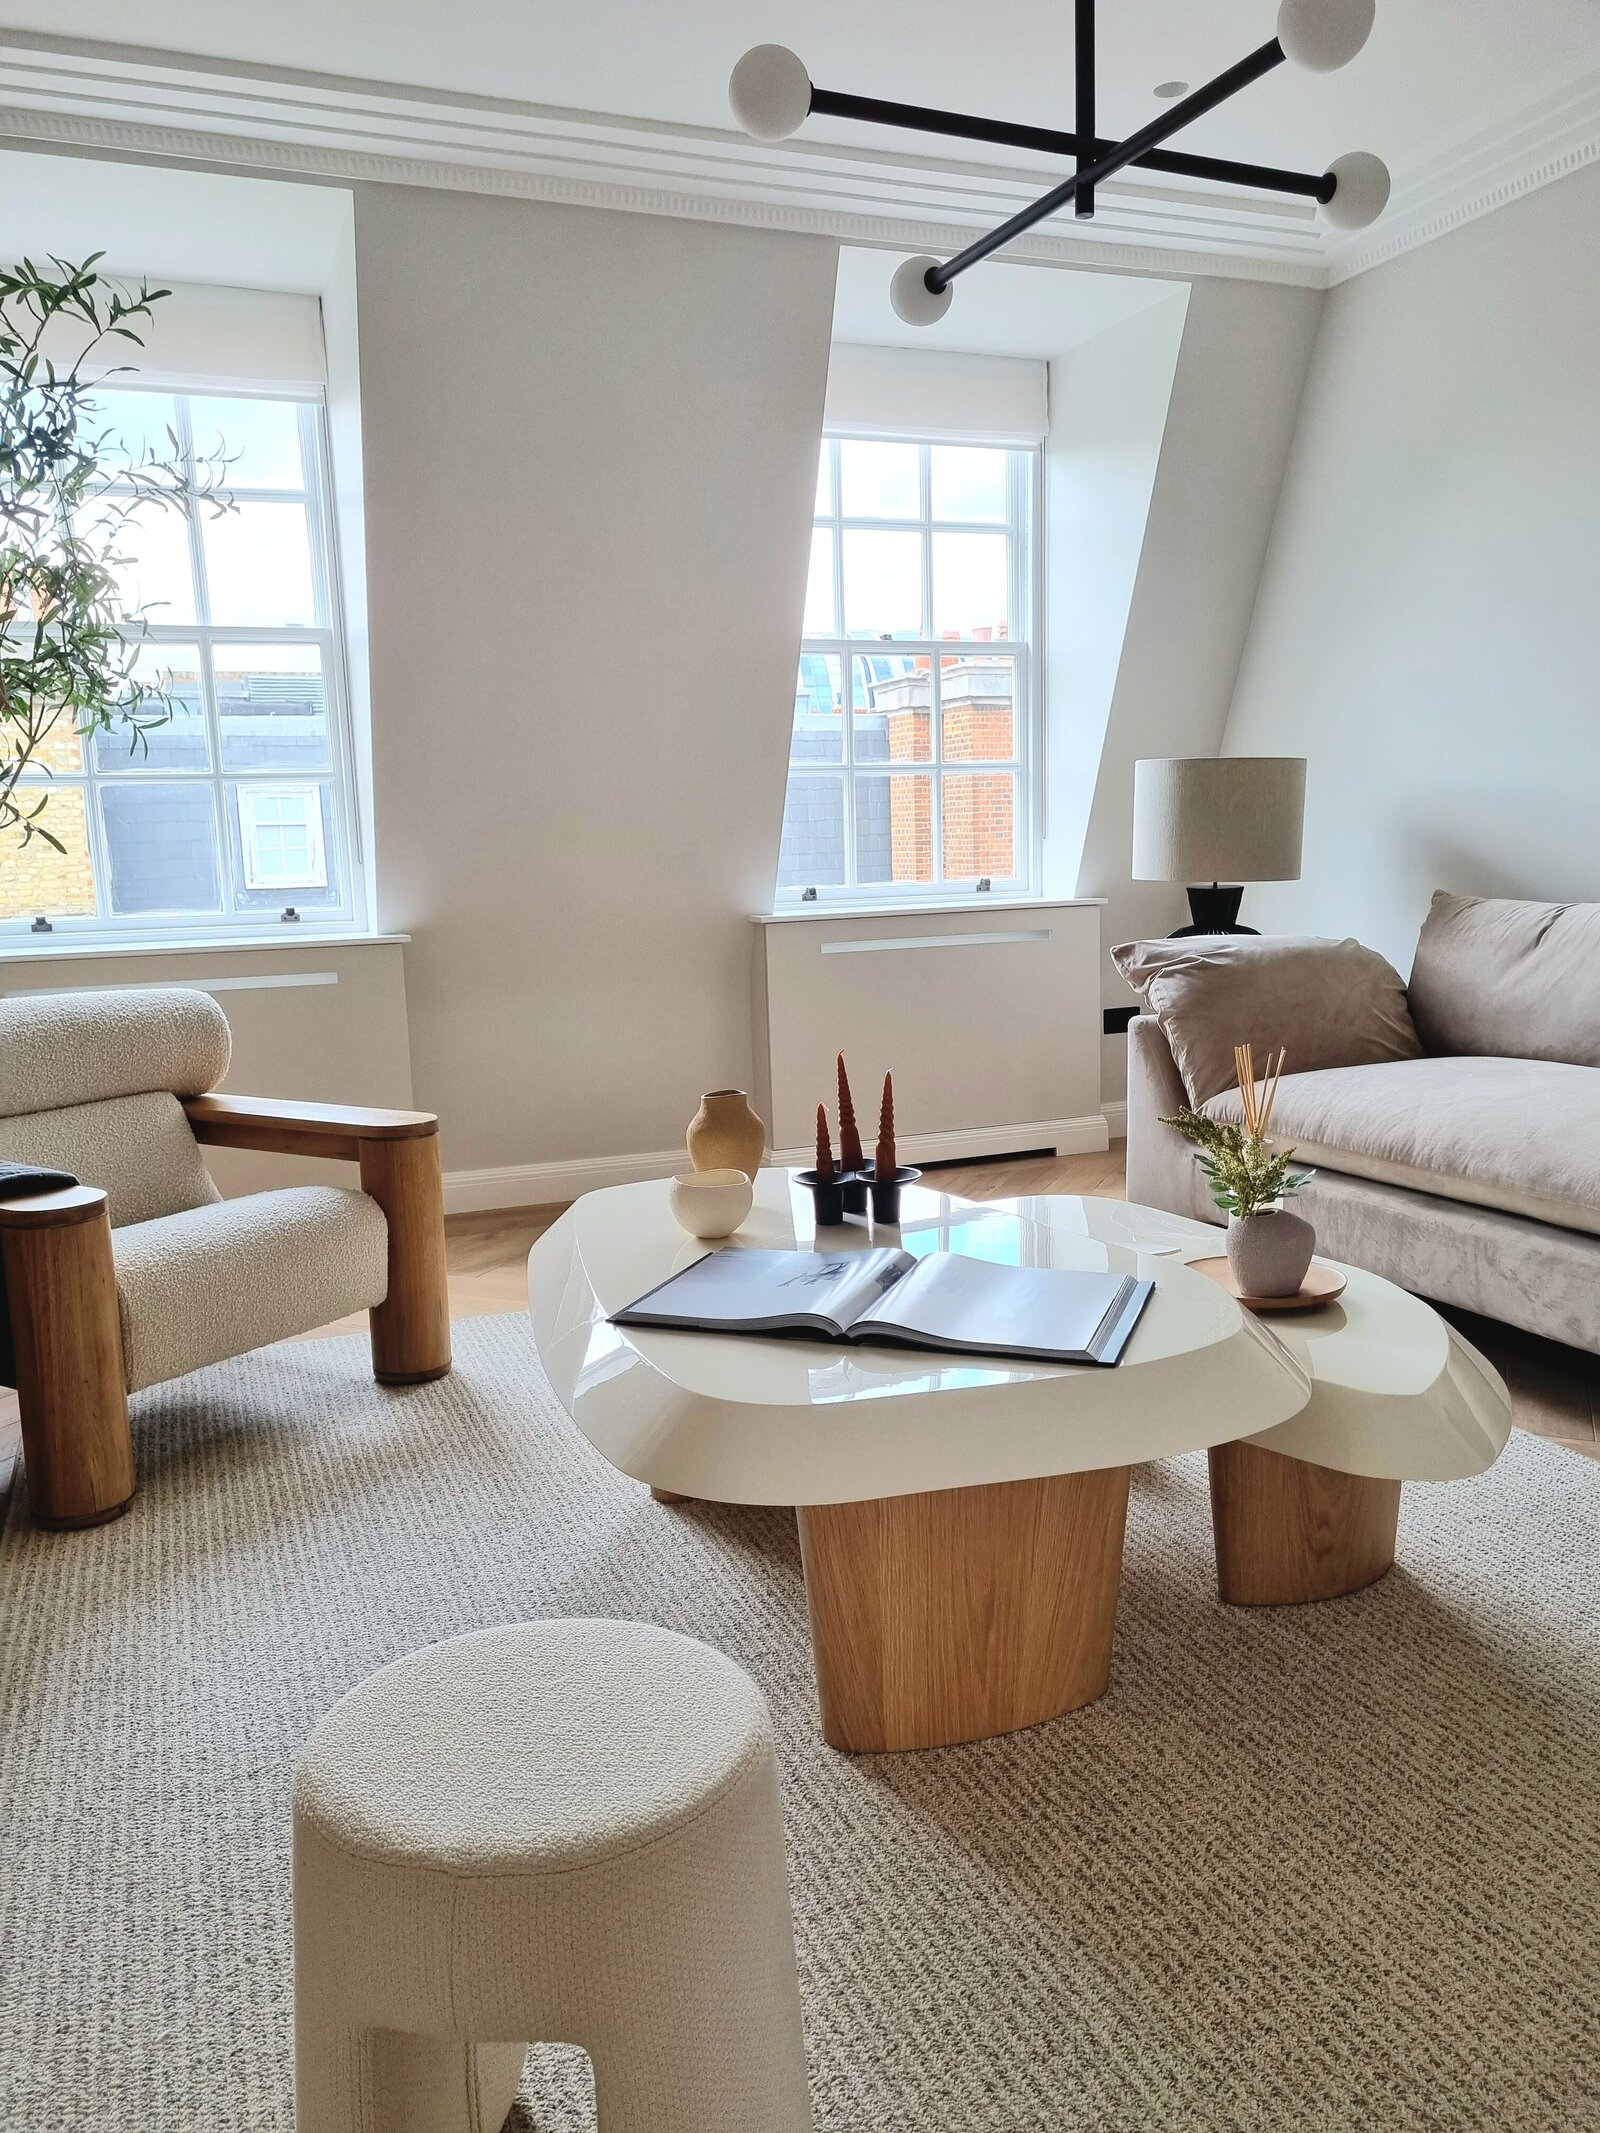 Bespoke furniture wool rug living room